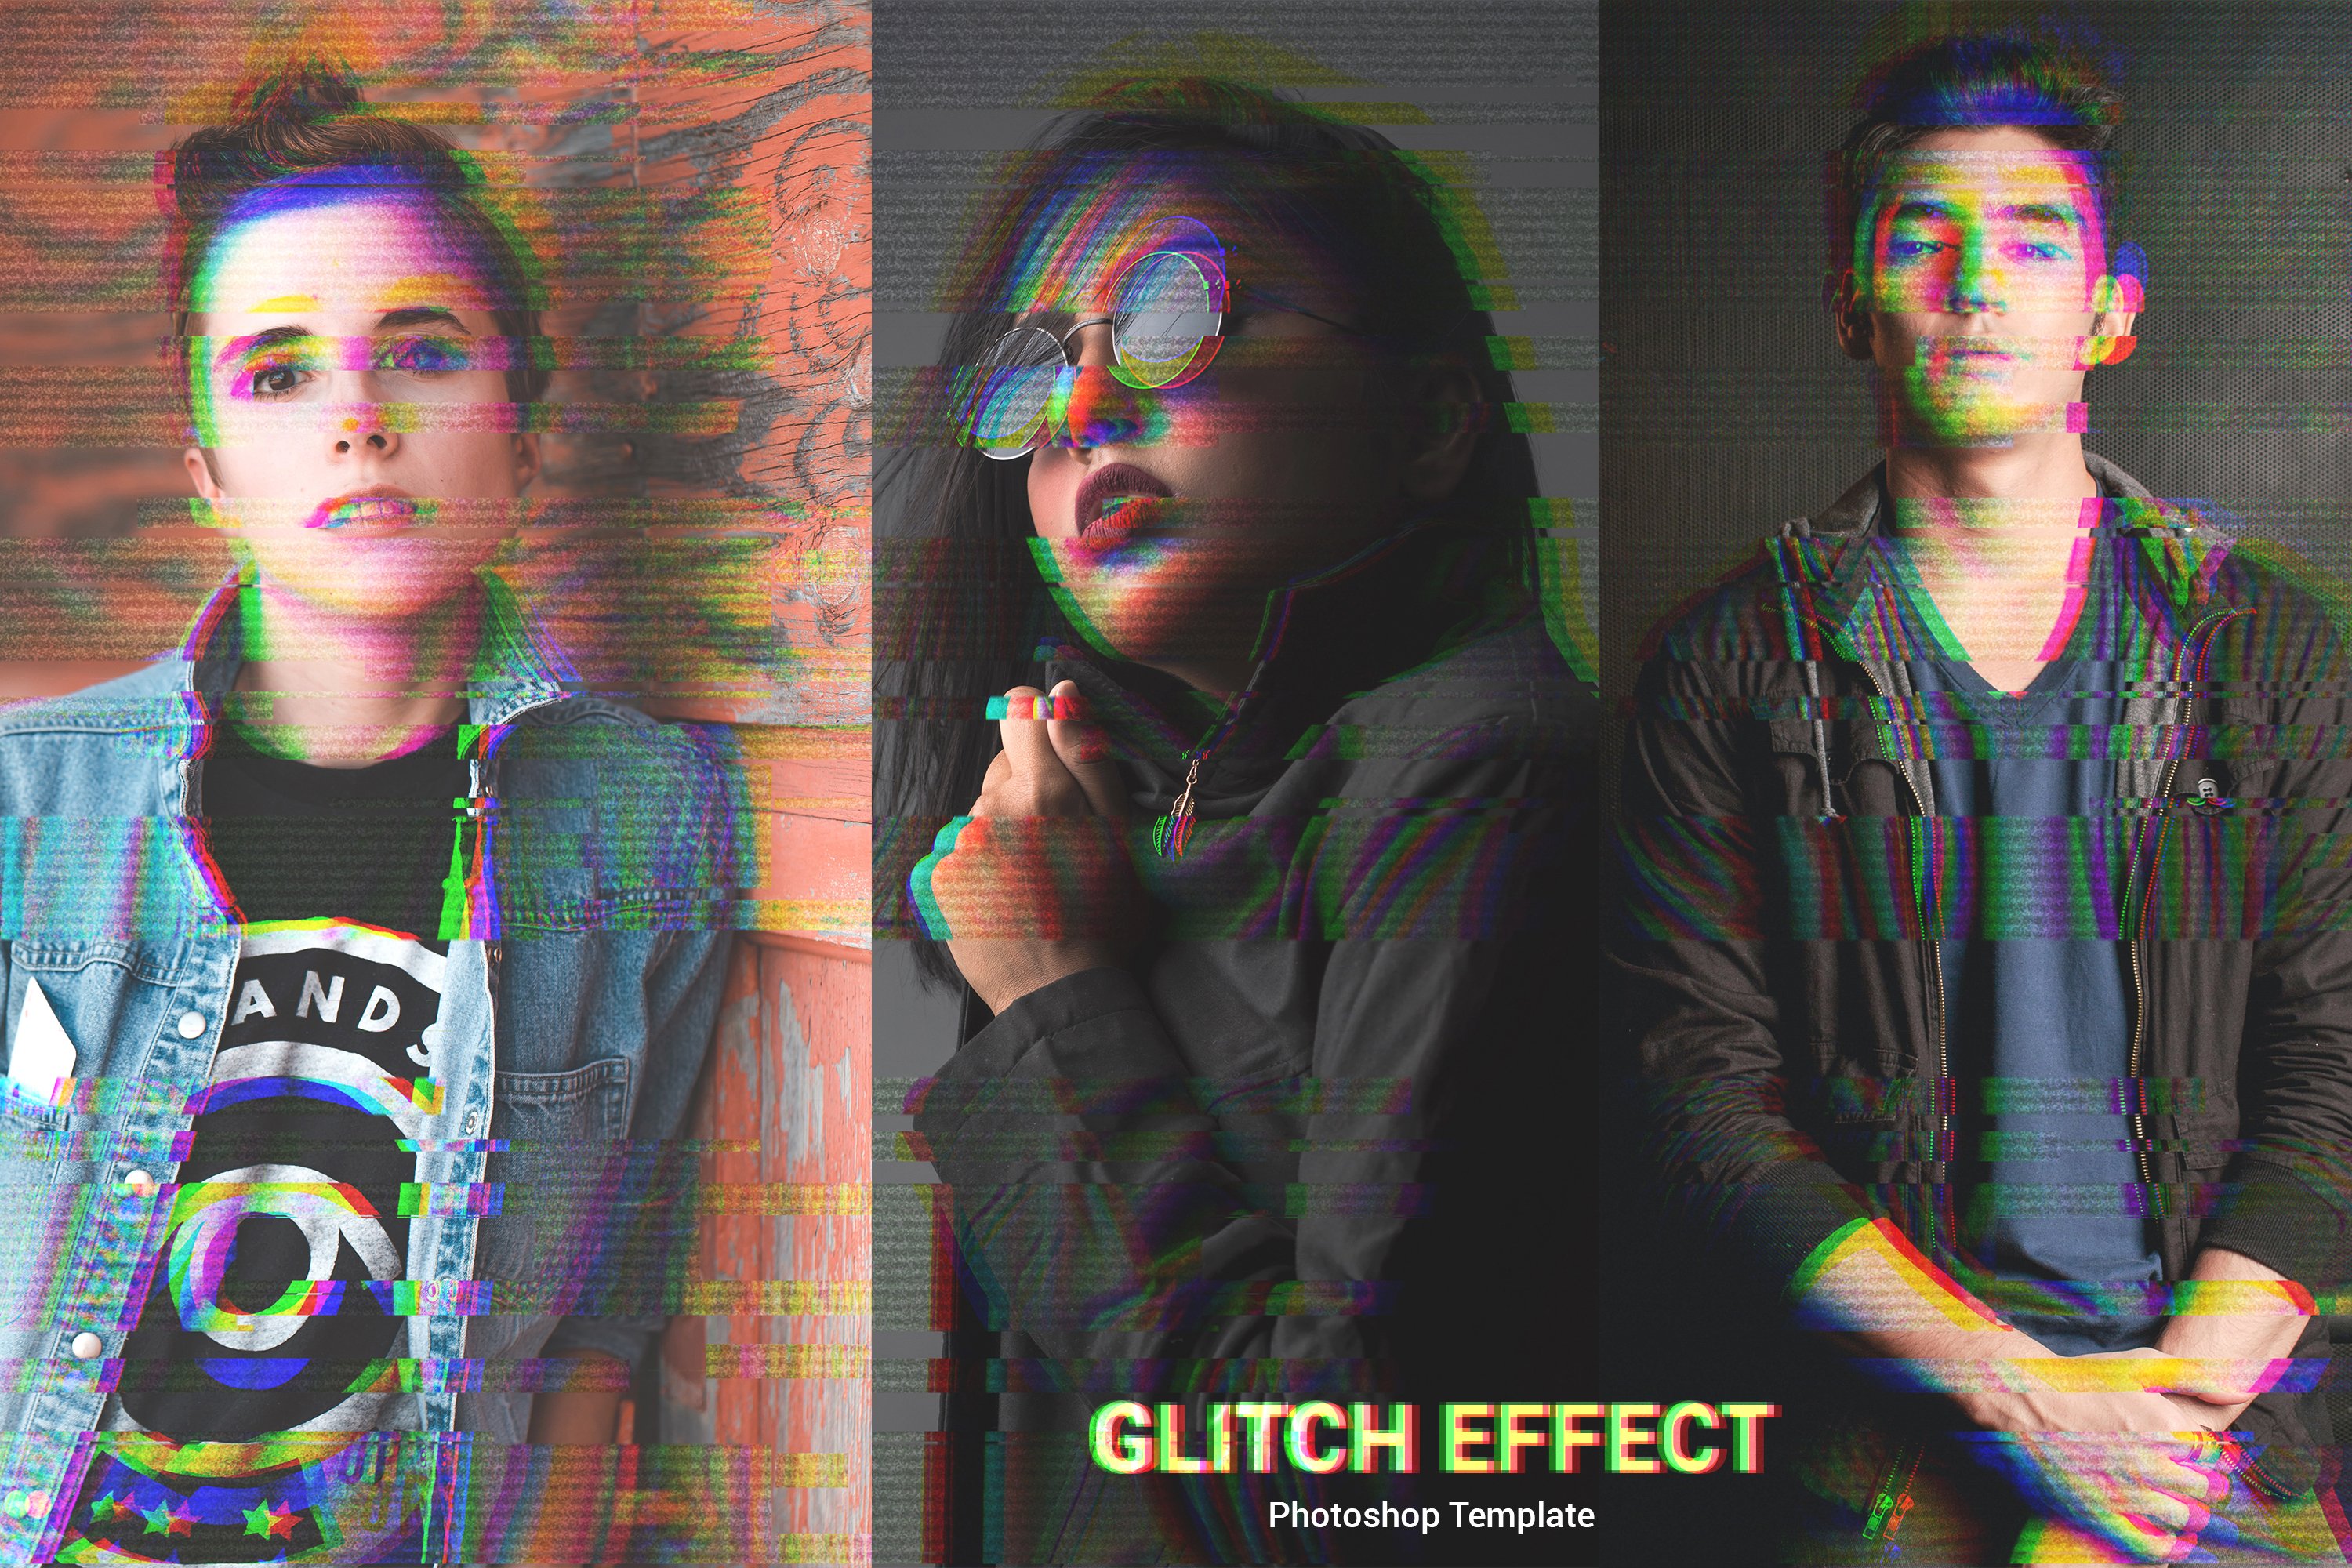 Glitch Effectcover image.